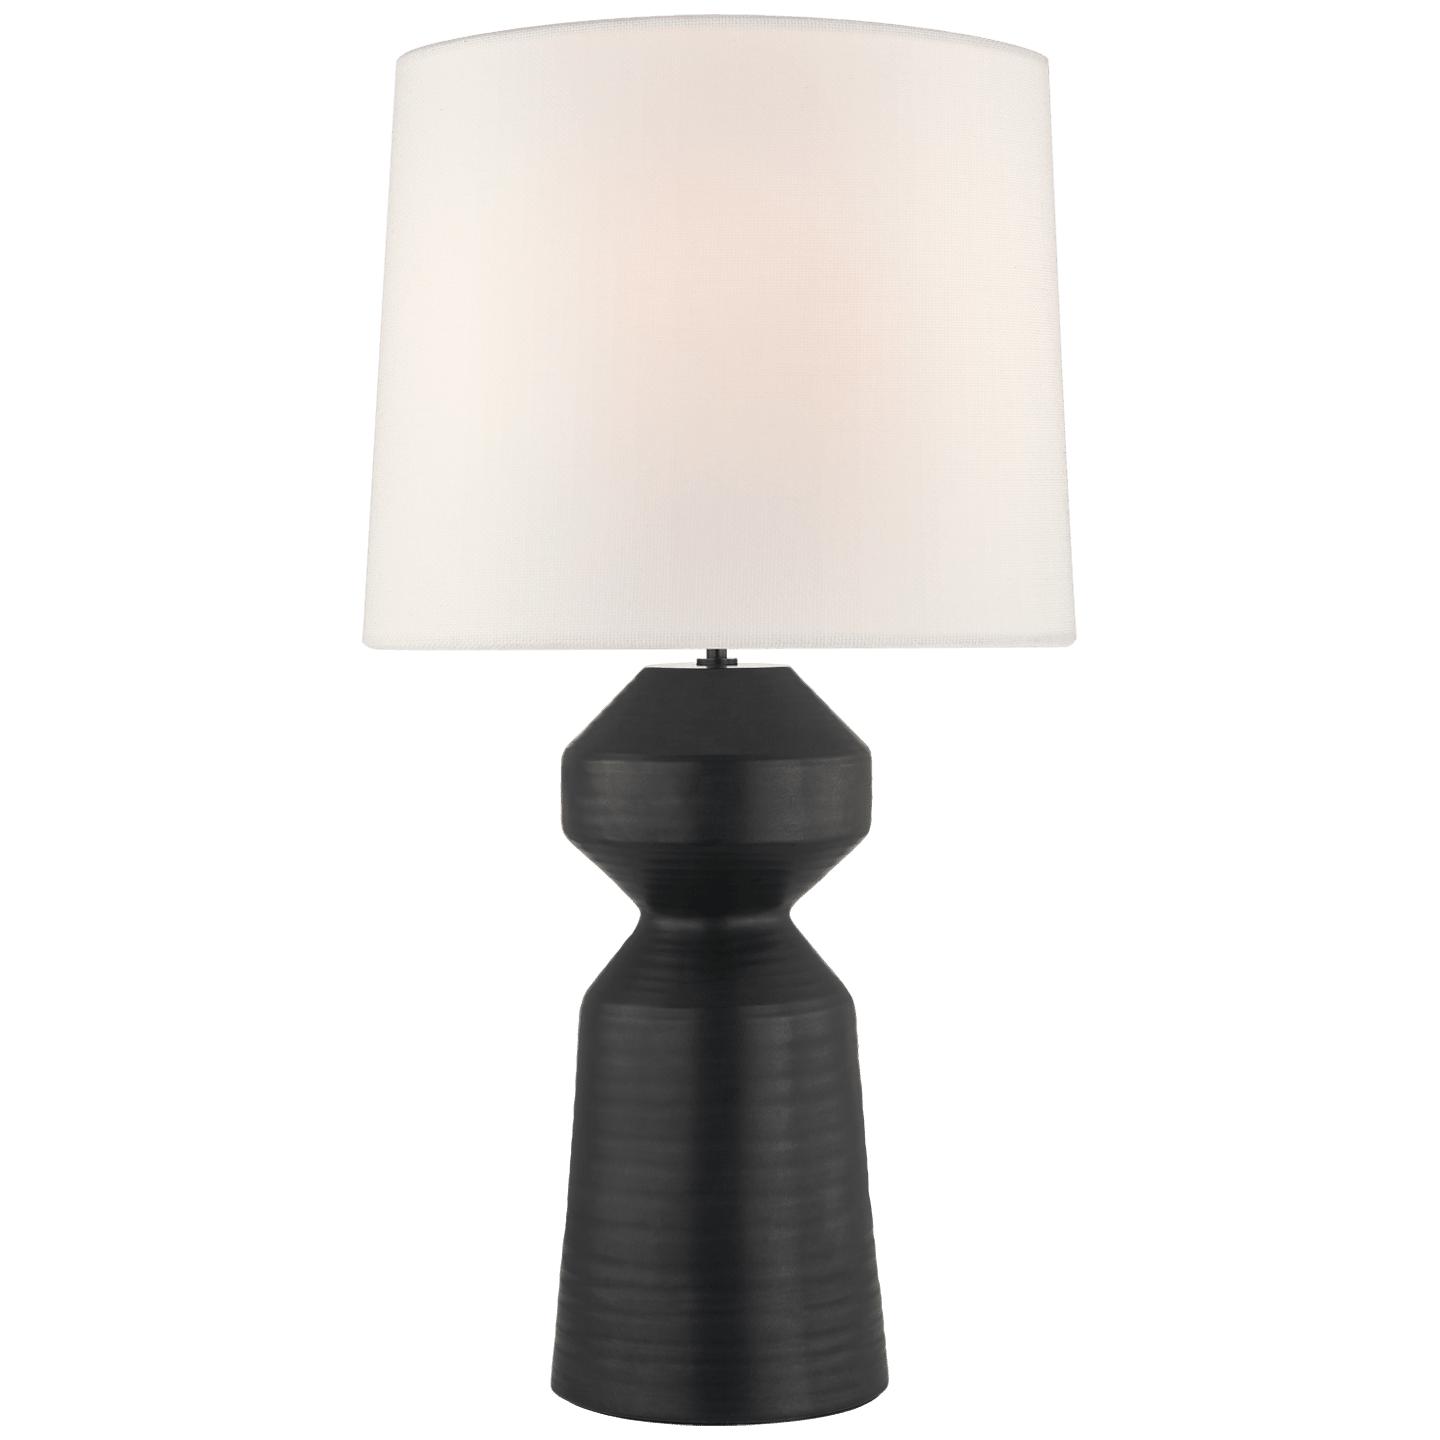 Купить Настольная лампа Nero Large Table Lamp в интернет-магазине roooms.ru